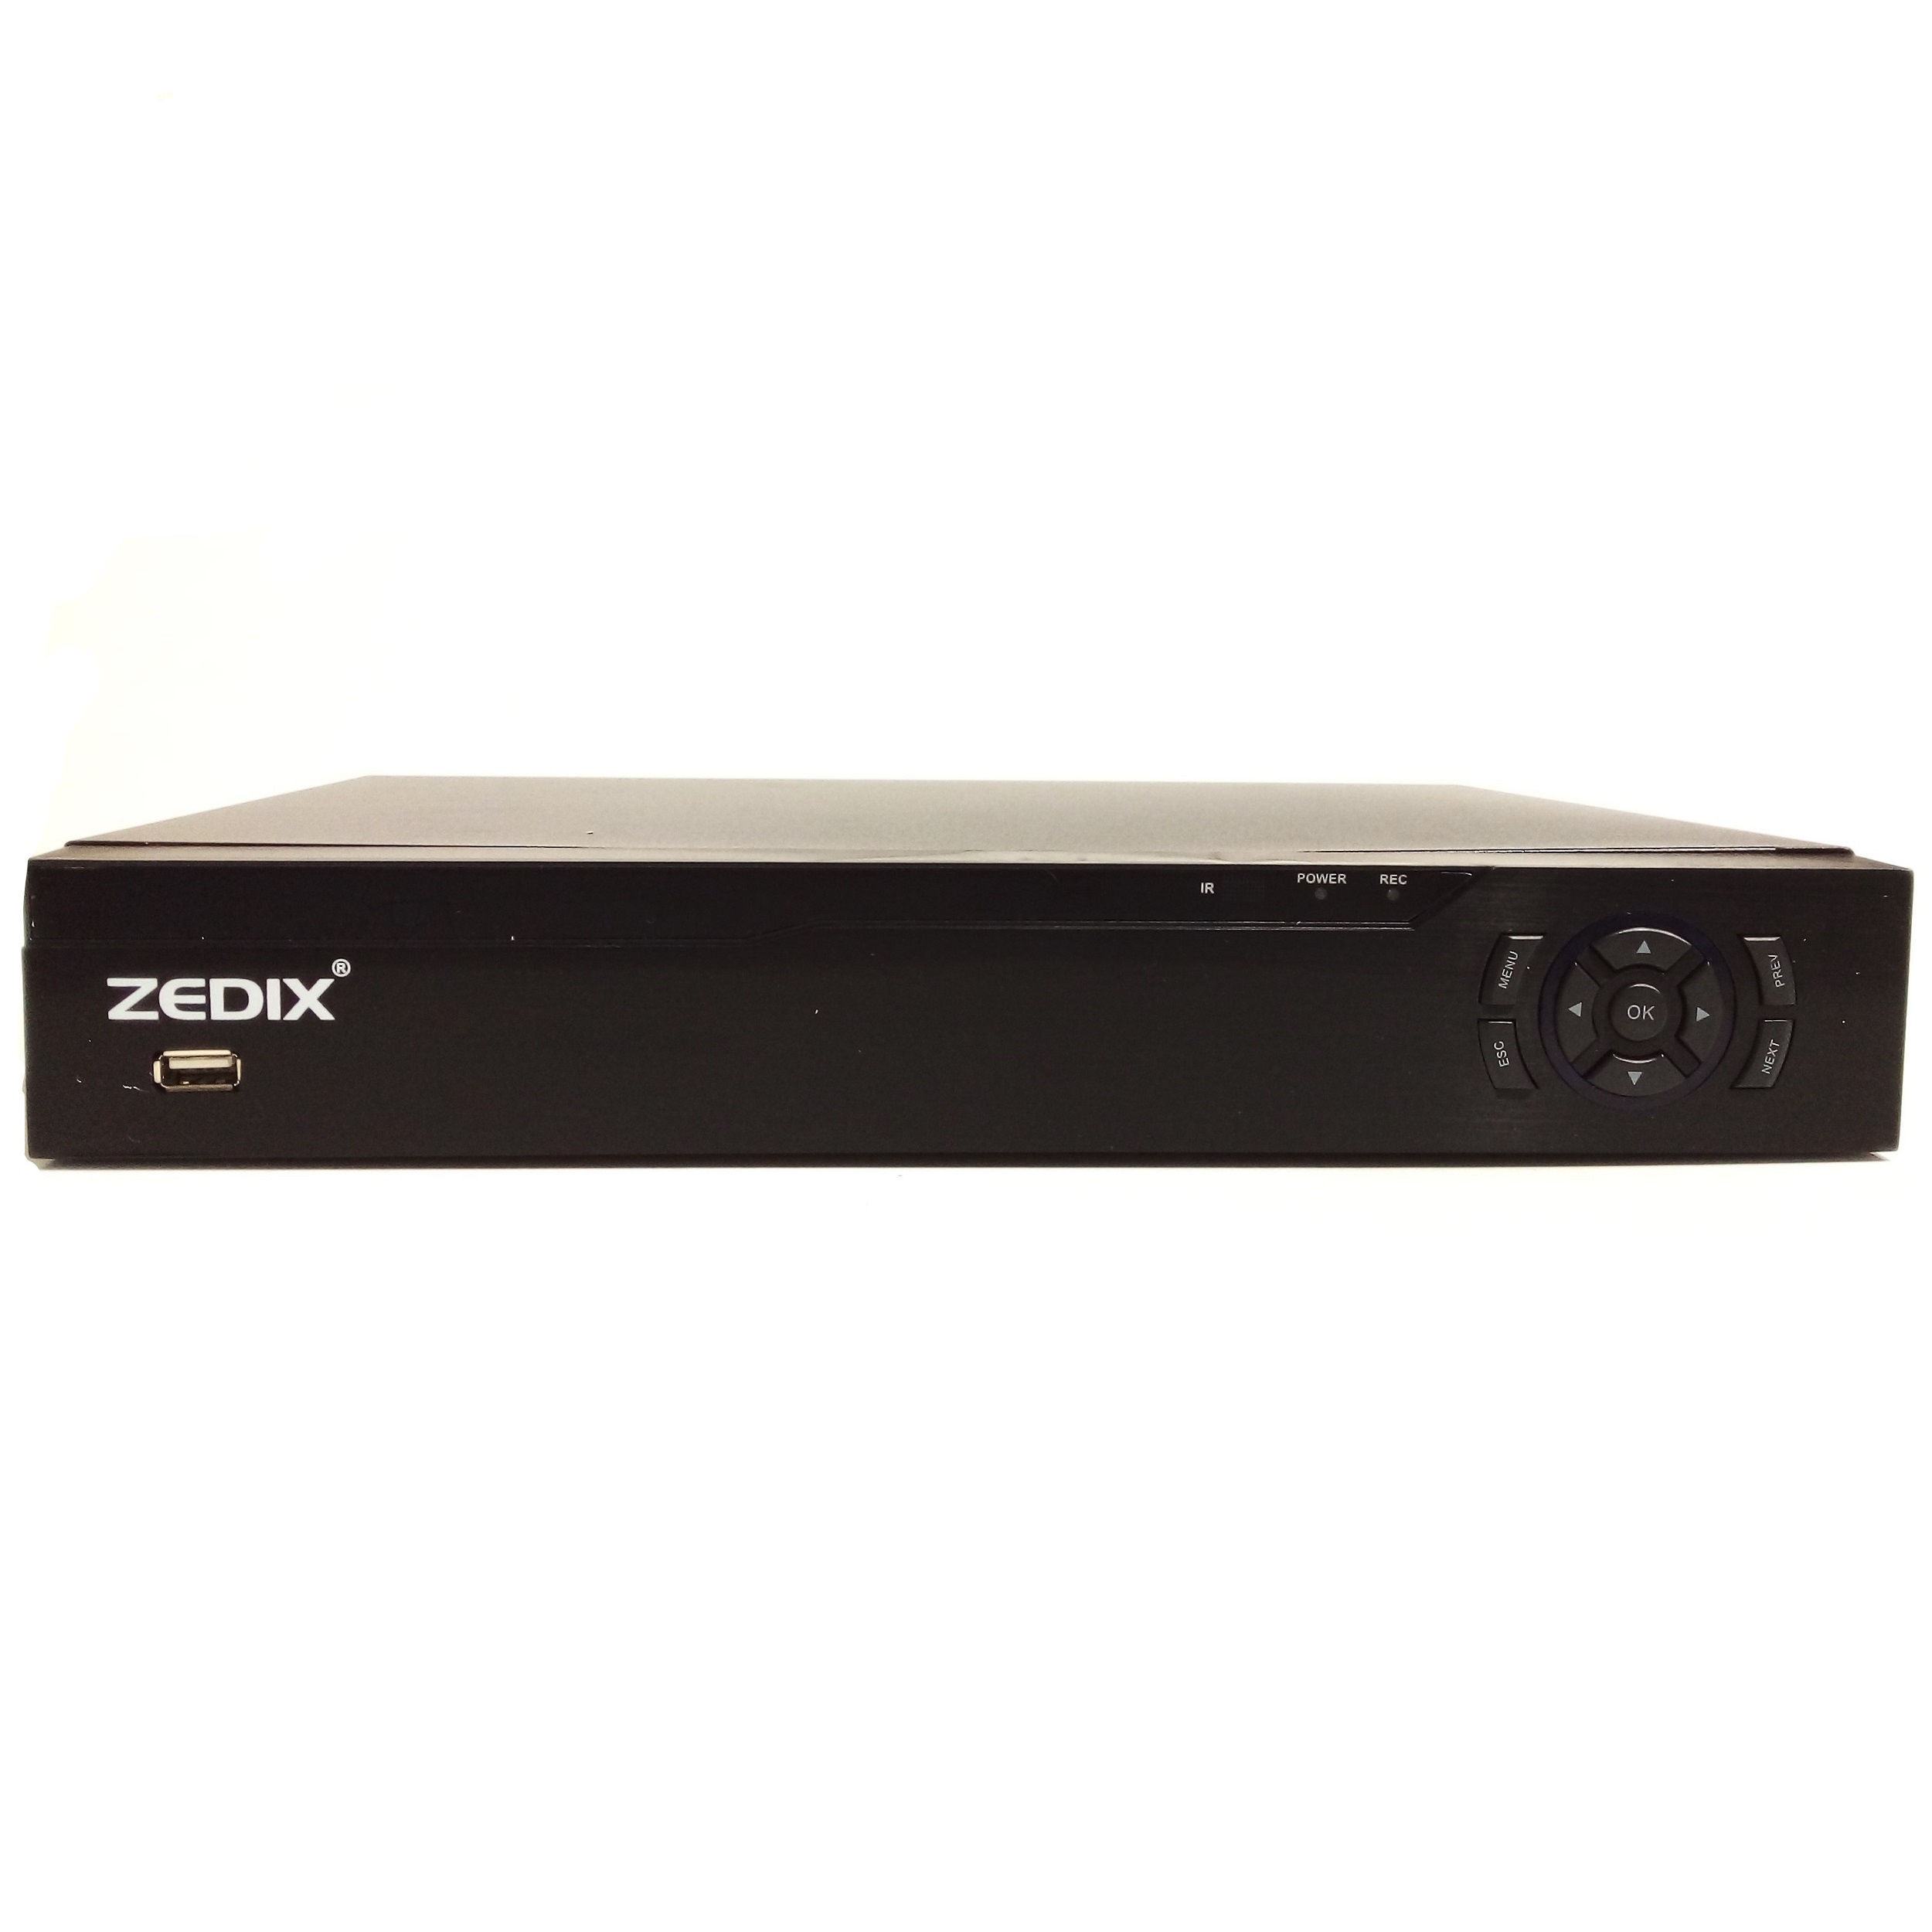 ضبط کننده ویدیویی زدیکس مدل ZX-2516HD